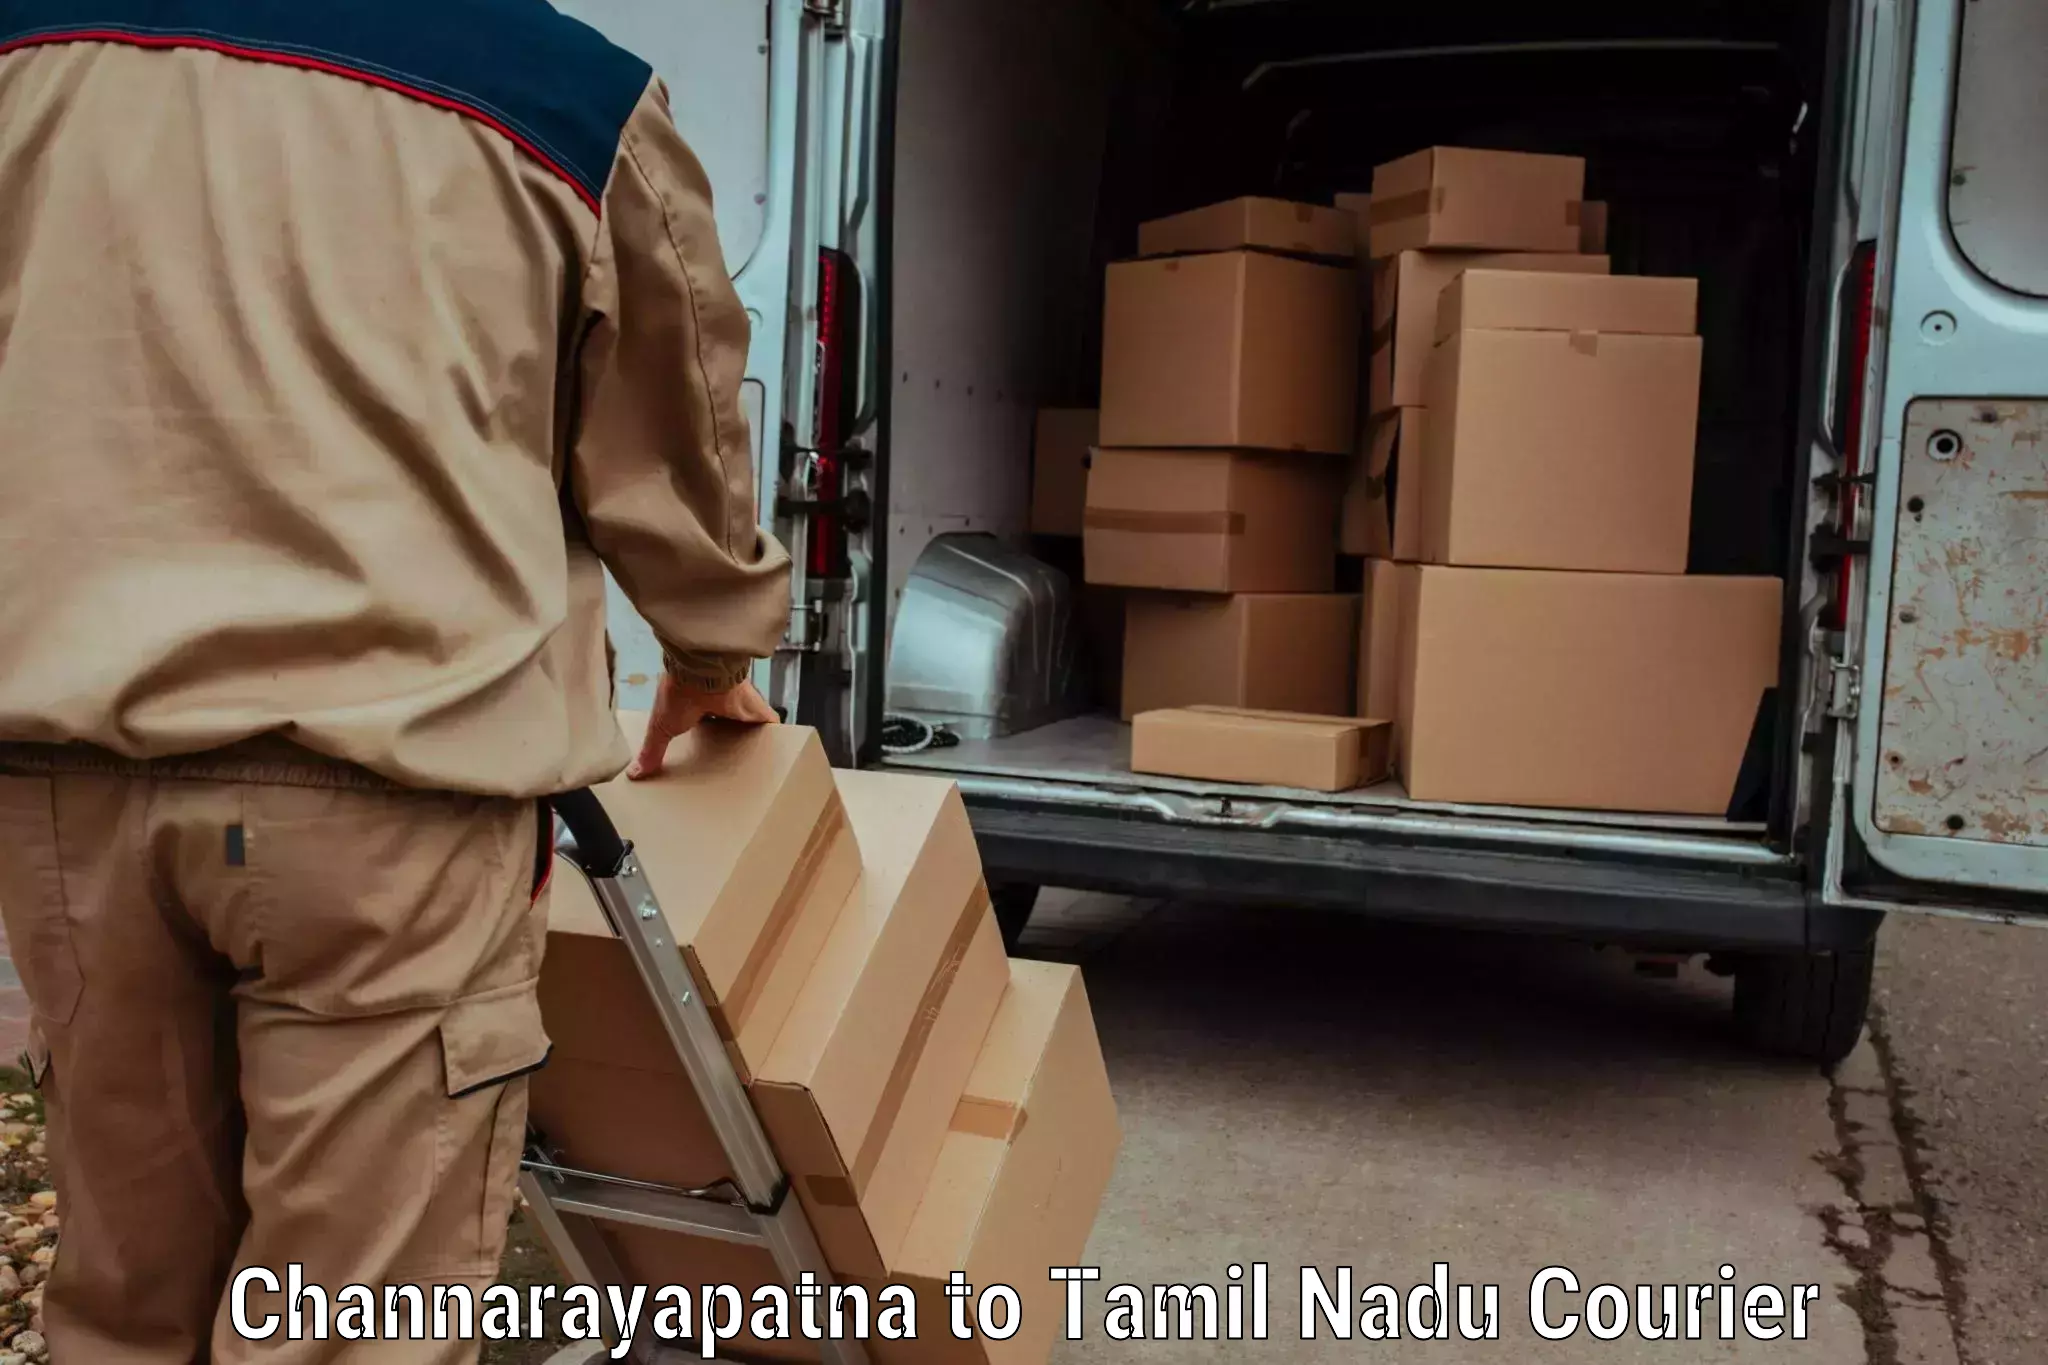 Global shipping networks Channarayapatna to Nandambakkam